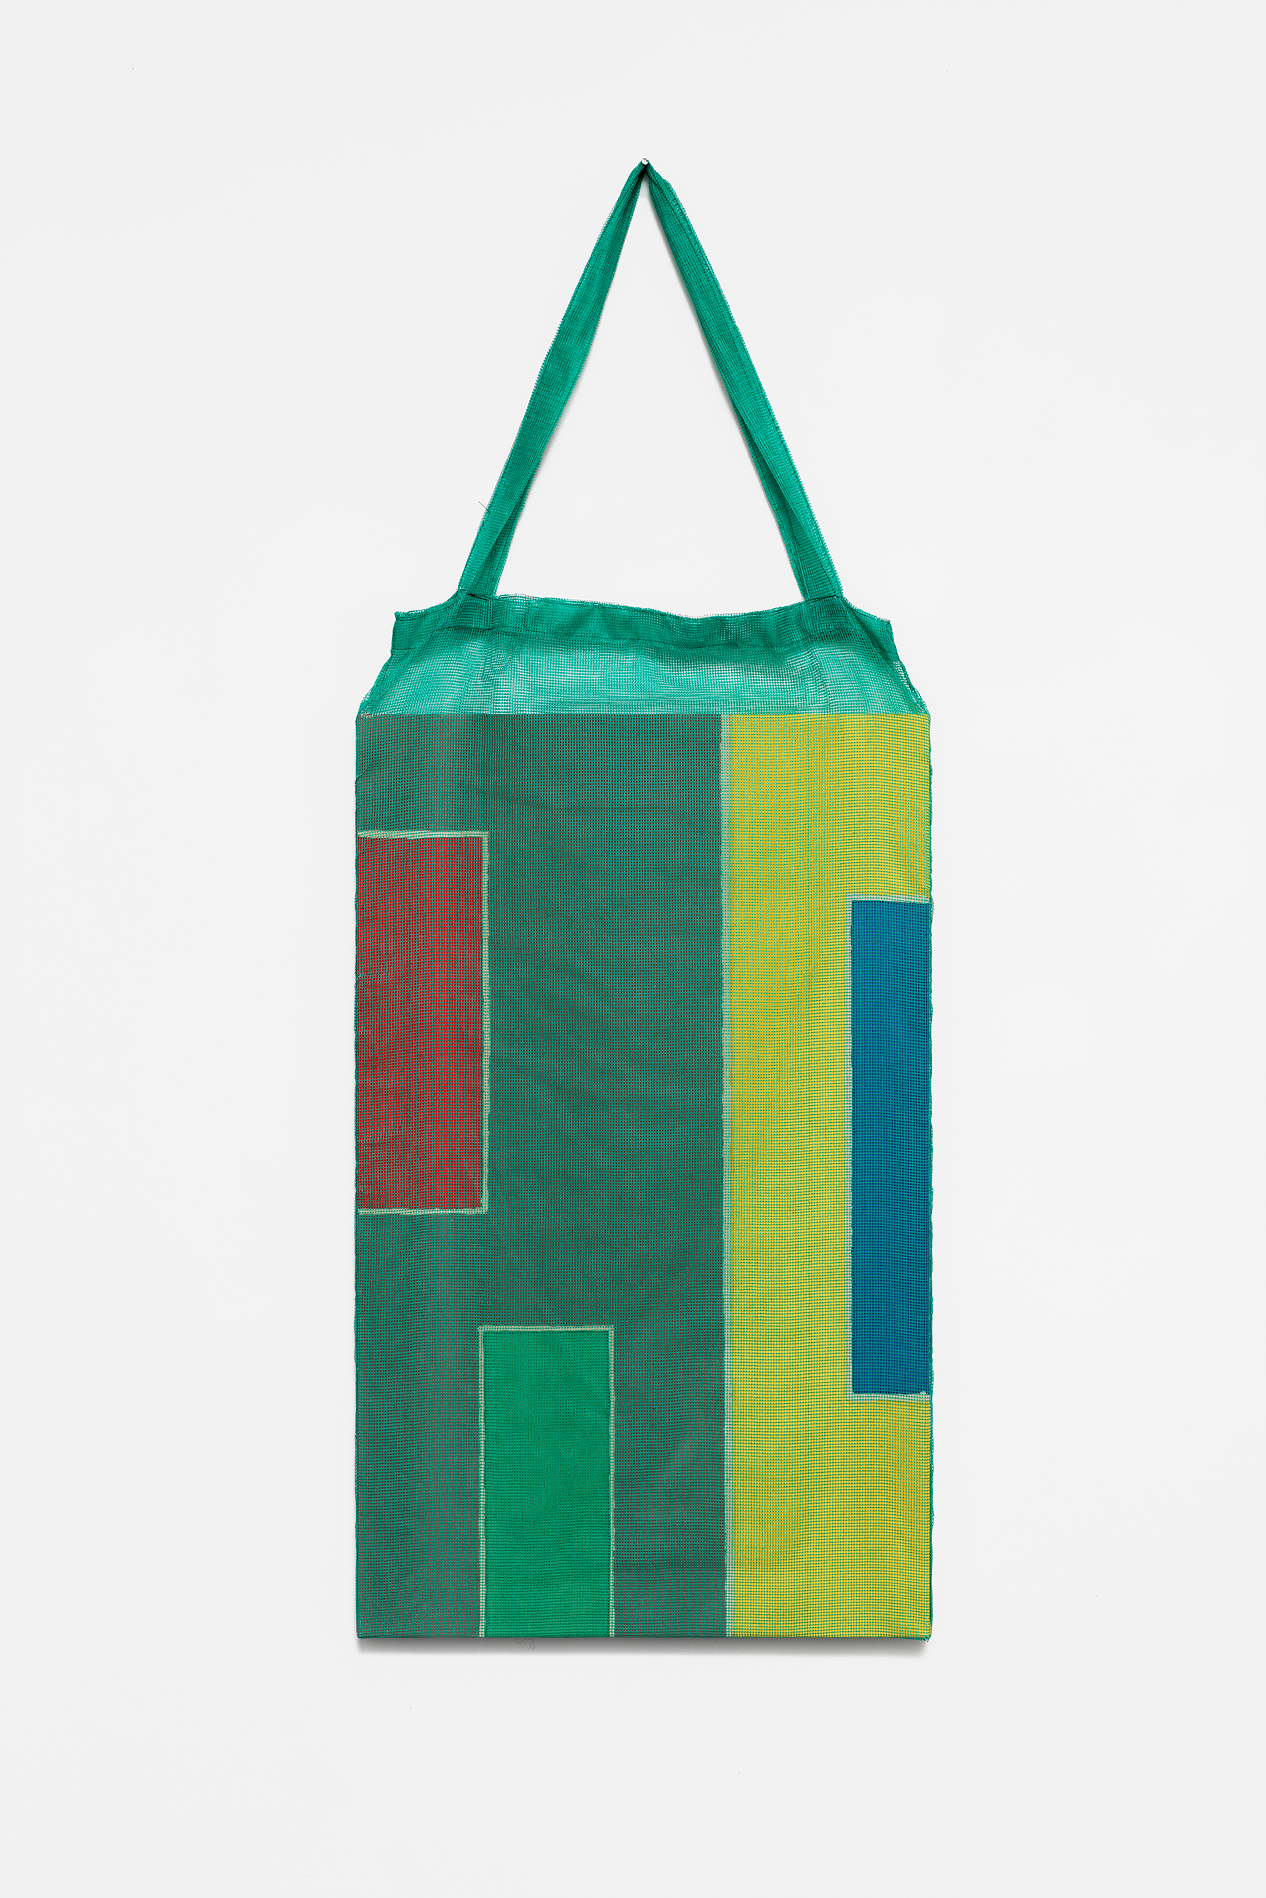 , 2018, Pigments on cotton fabric [batik] and bag, 120 x 46 x 3 cm, , unique artwork, Photo: Aurlien Mole